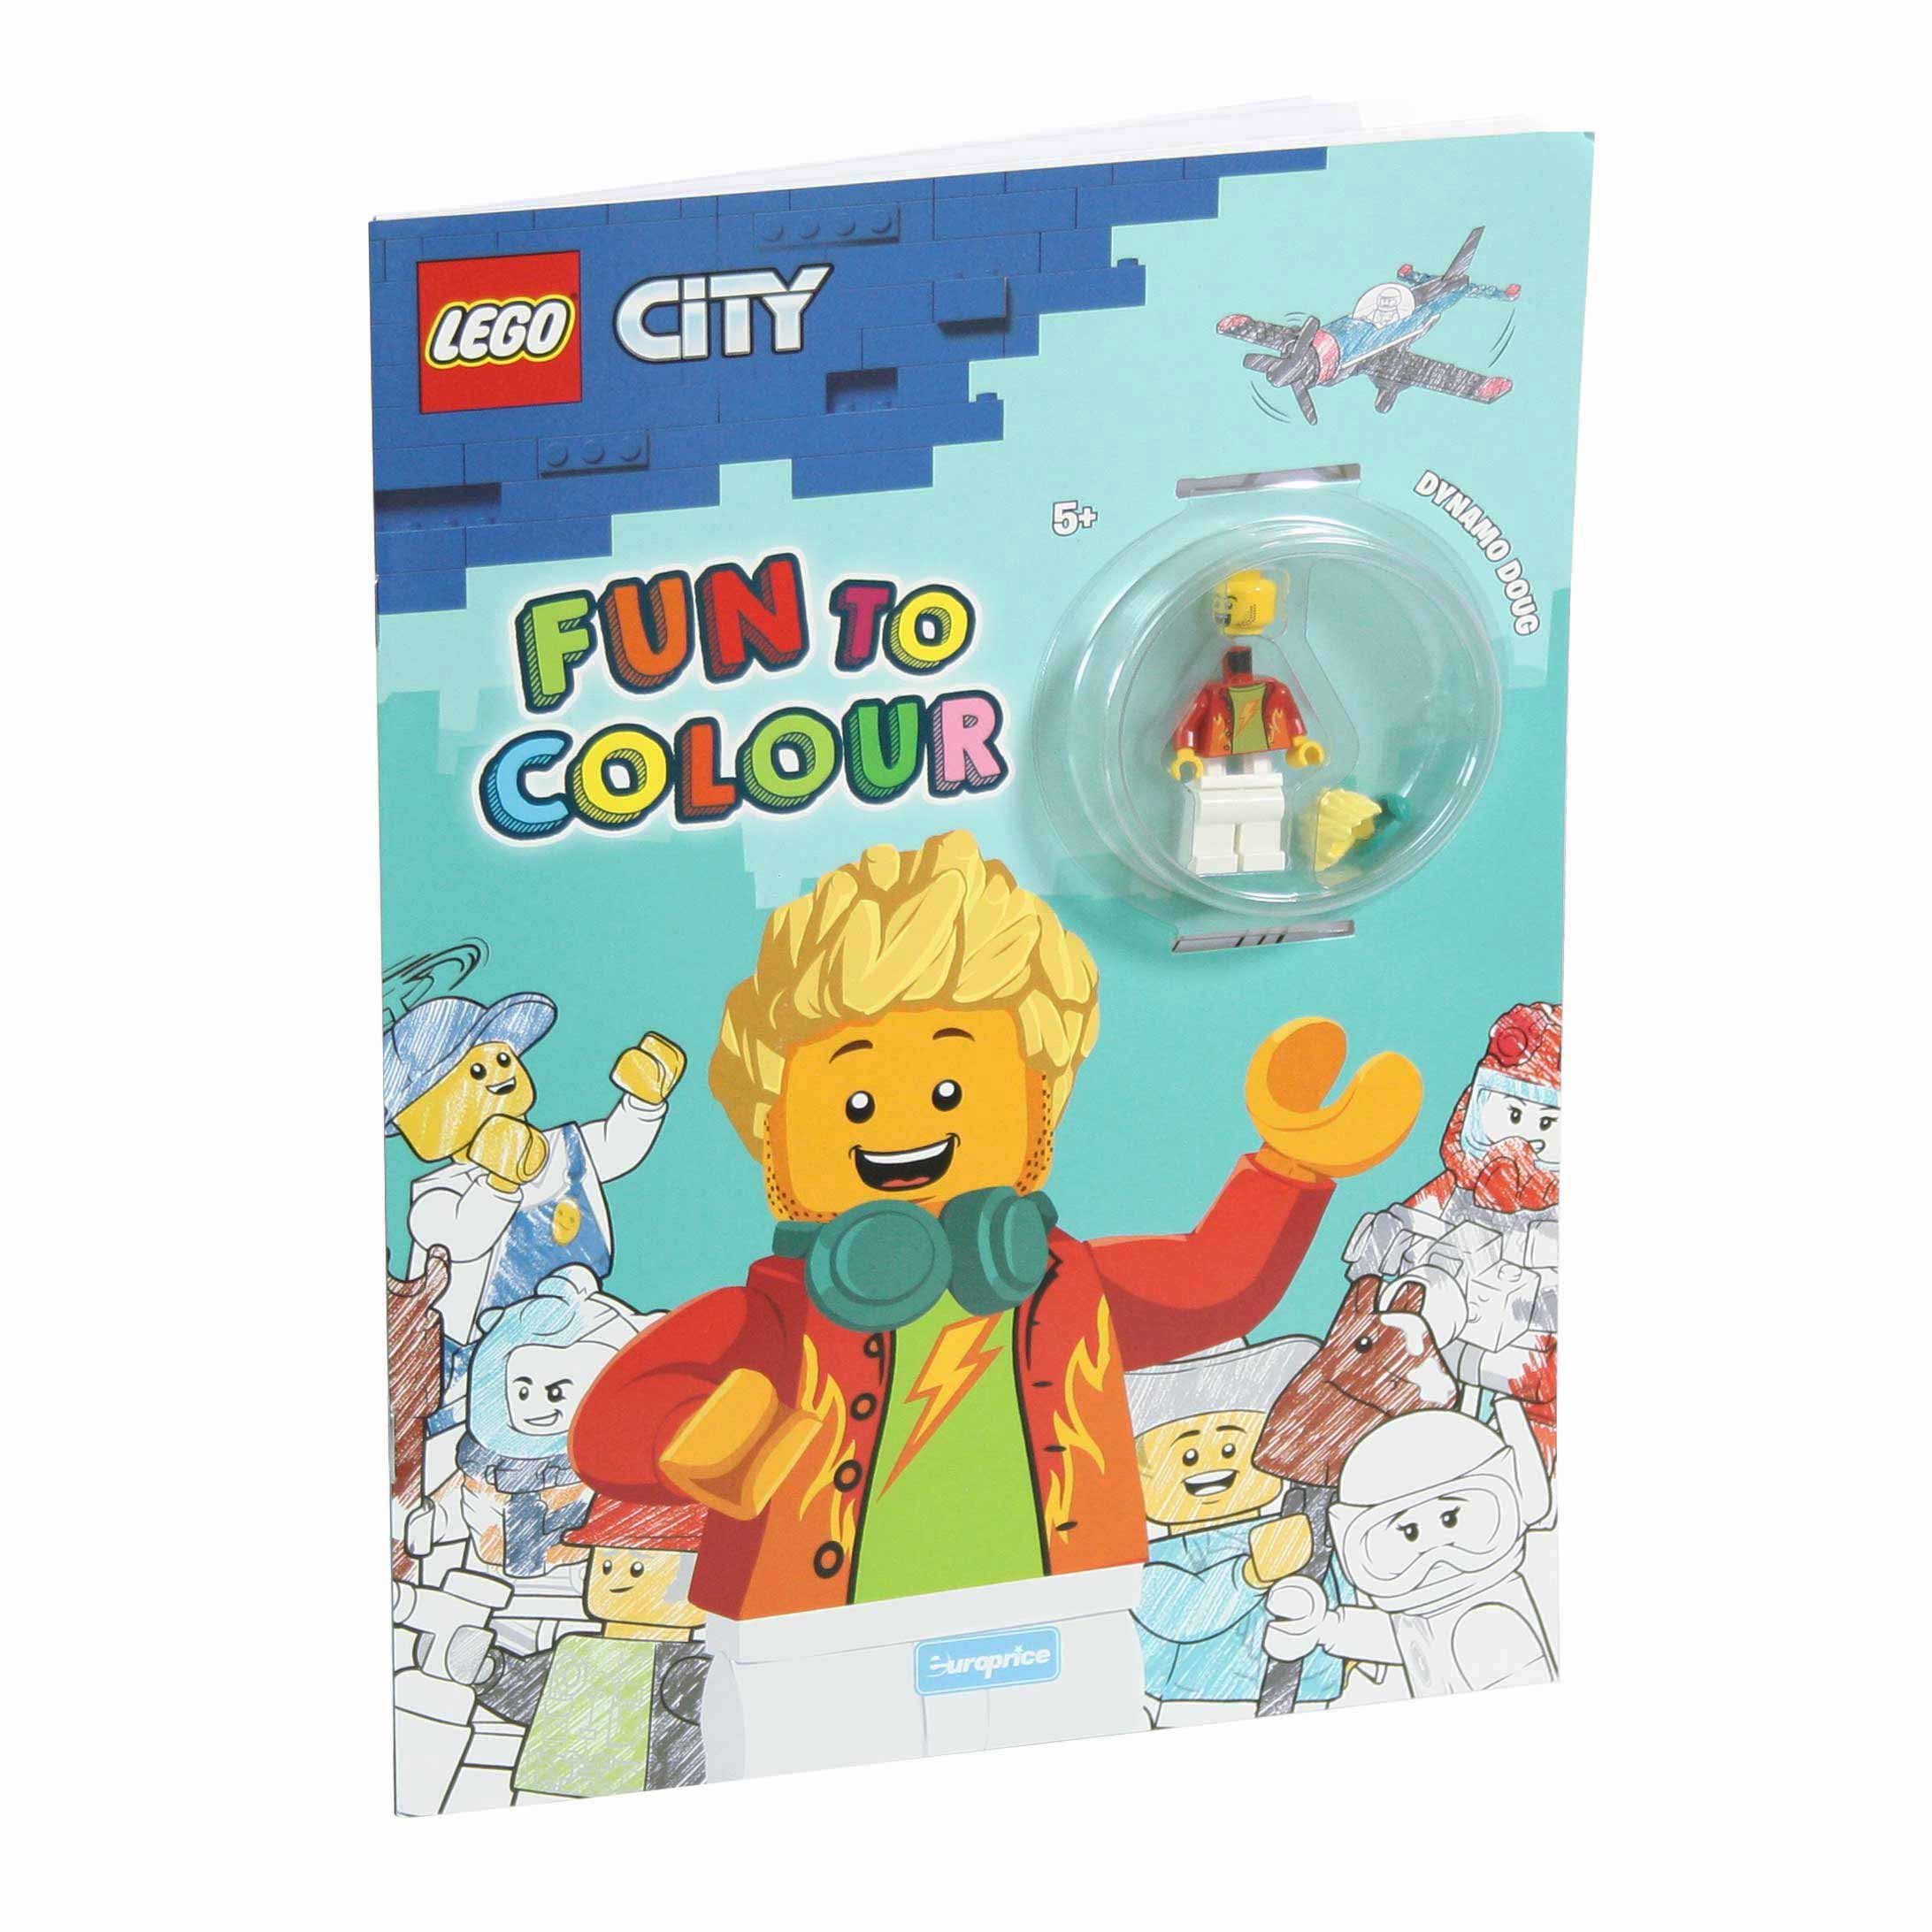 Imagem da capa do livro de pintar "Lego Fun to Colour - City Tread Octane" com a minifigura LEGO.